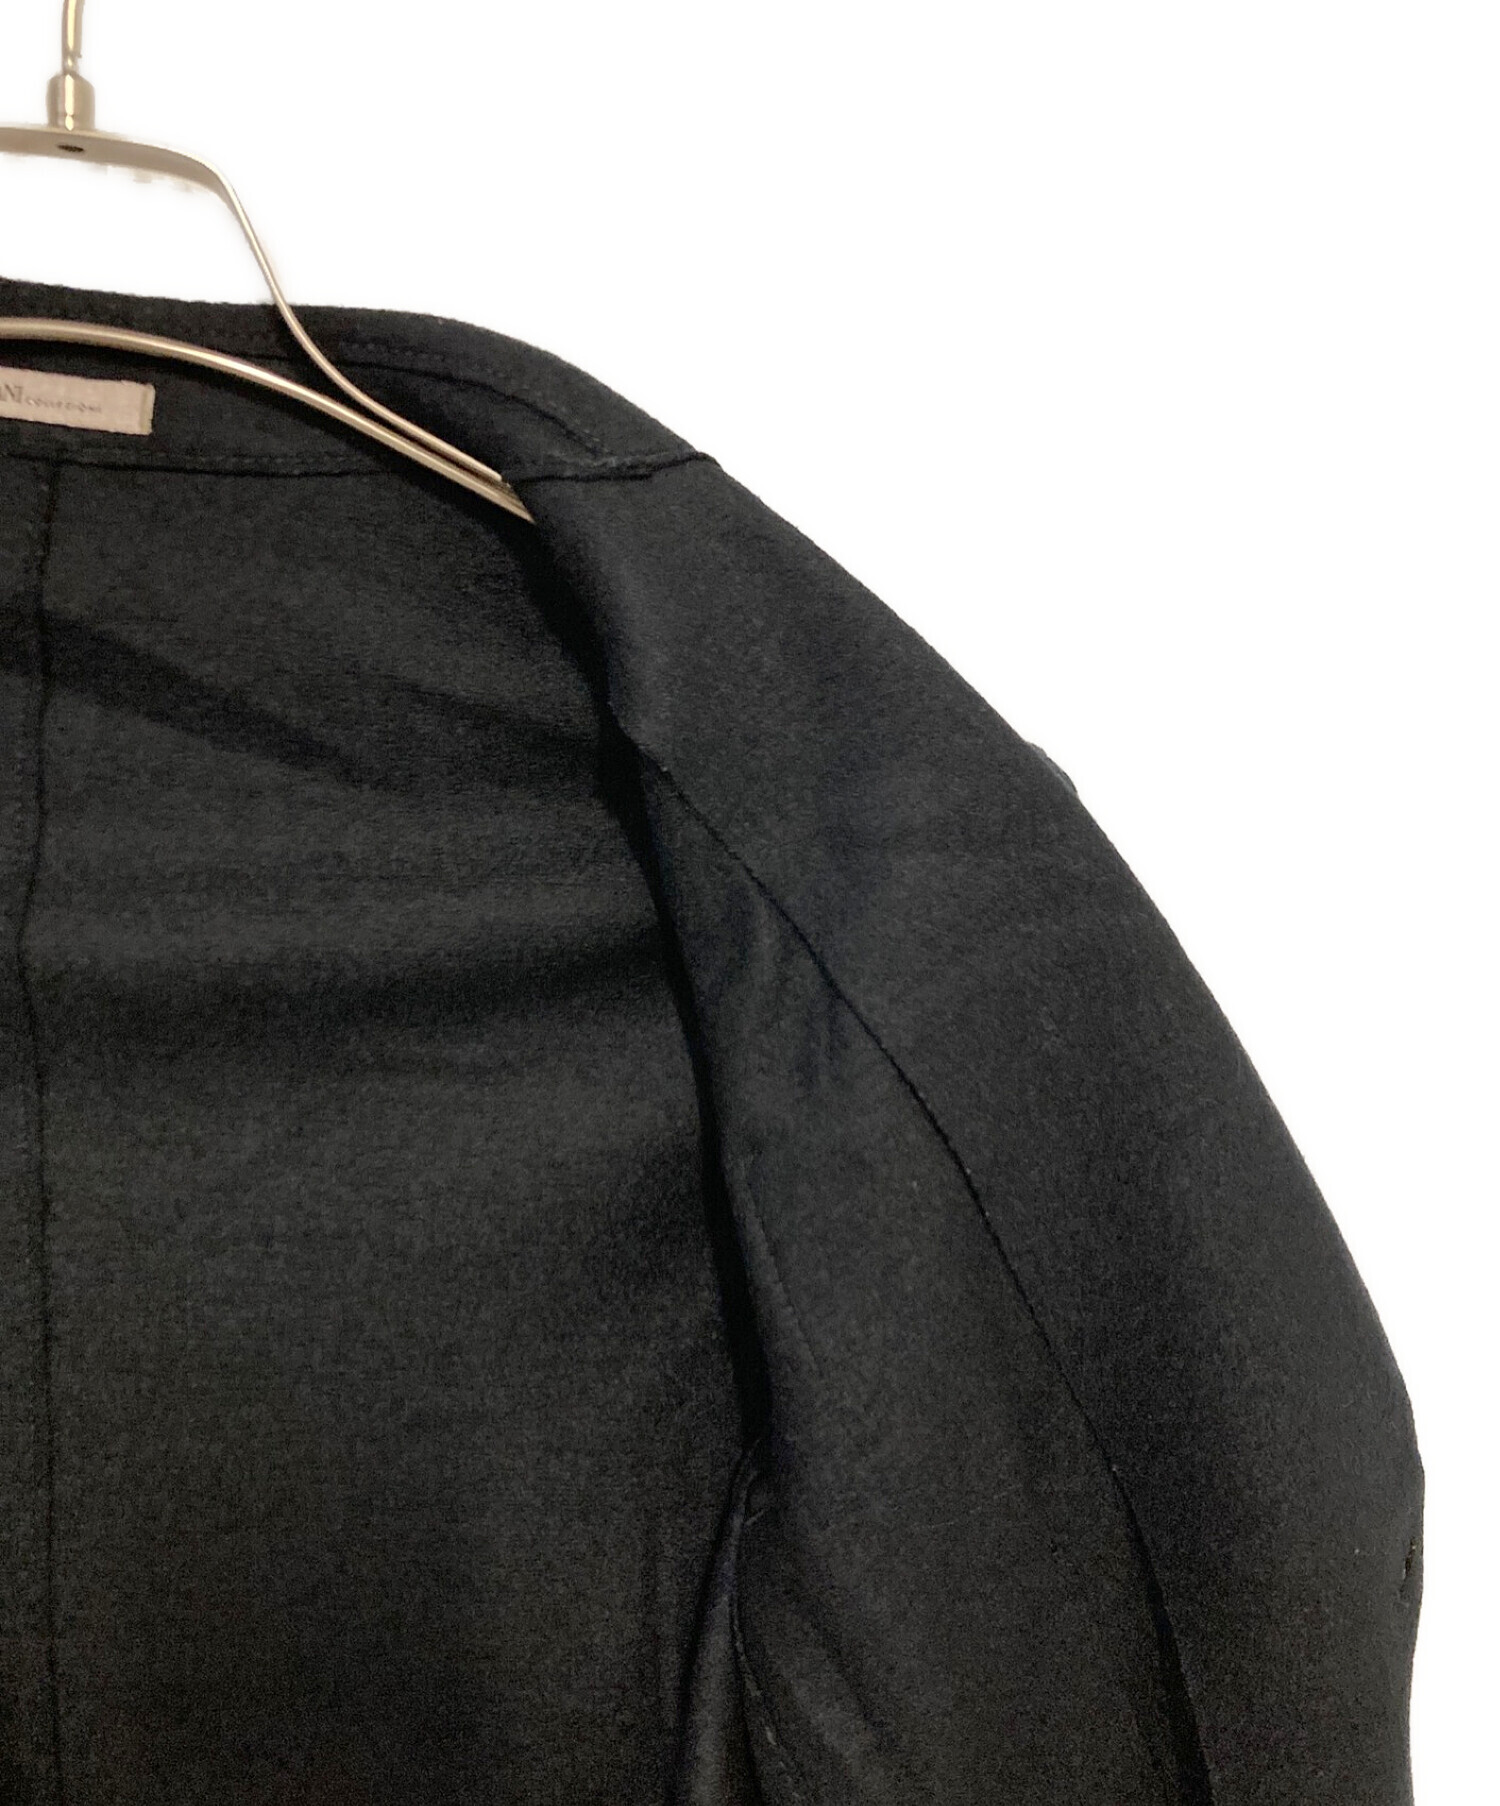 ARMANI COLLEZIONI (アルマーニ コレツィオーニ) ウール混アンコンジャケット ブラック サイズ:XL